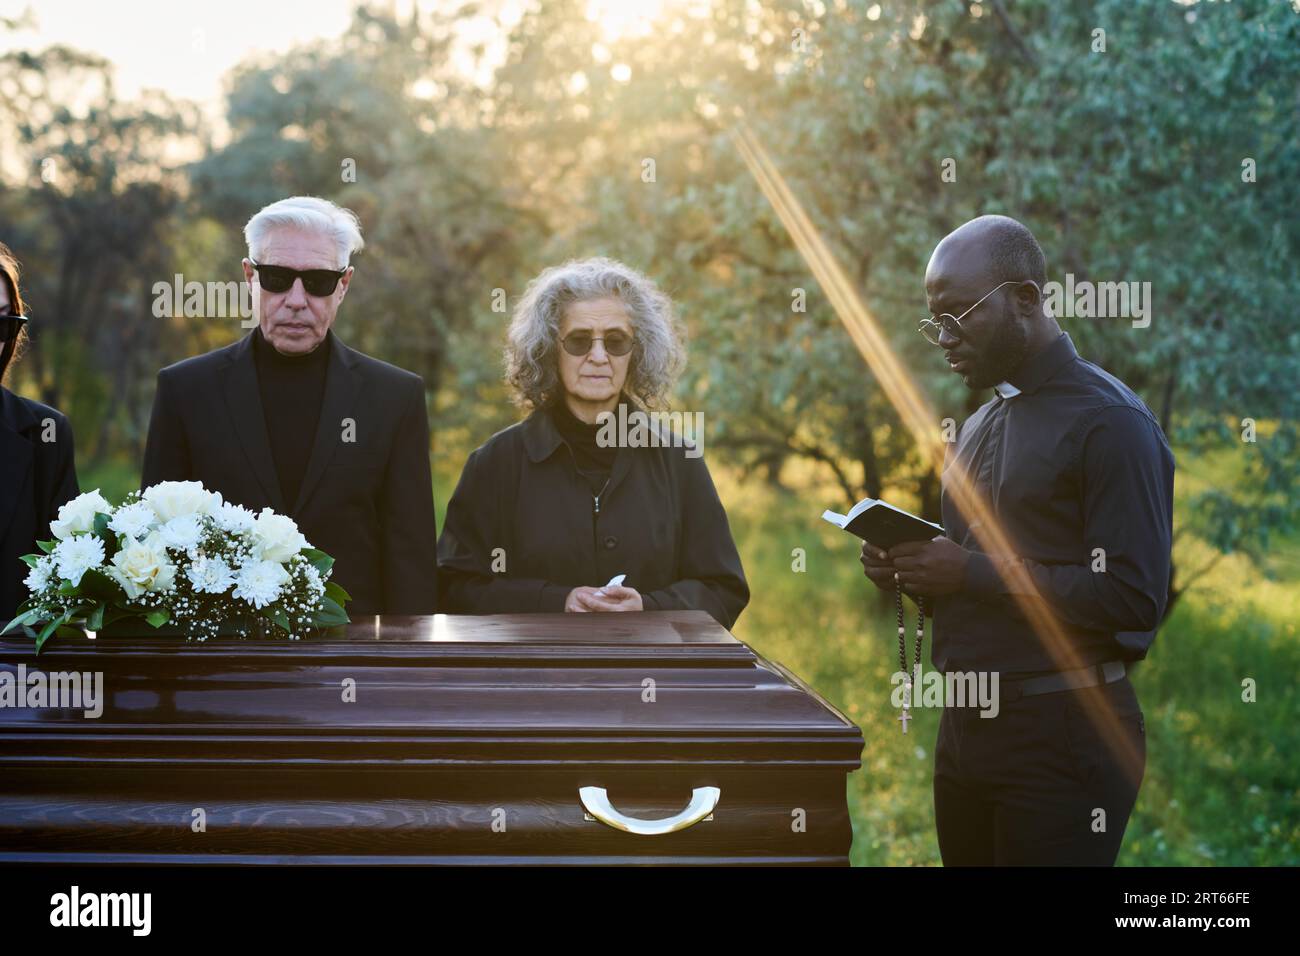 Jeune pasteur lisant des versets de la Sainte Bible tout en se tenant devant un cercueil avec le couvercle fermé et les parents en deuil de la personne décédée Banque D'Images